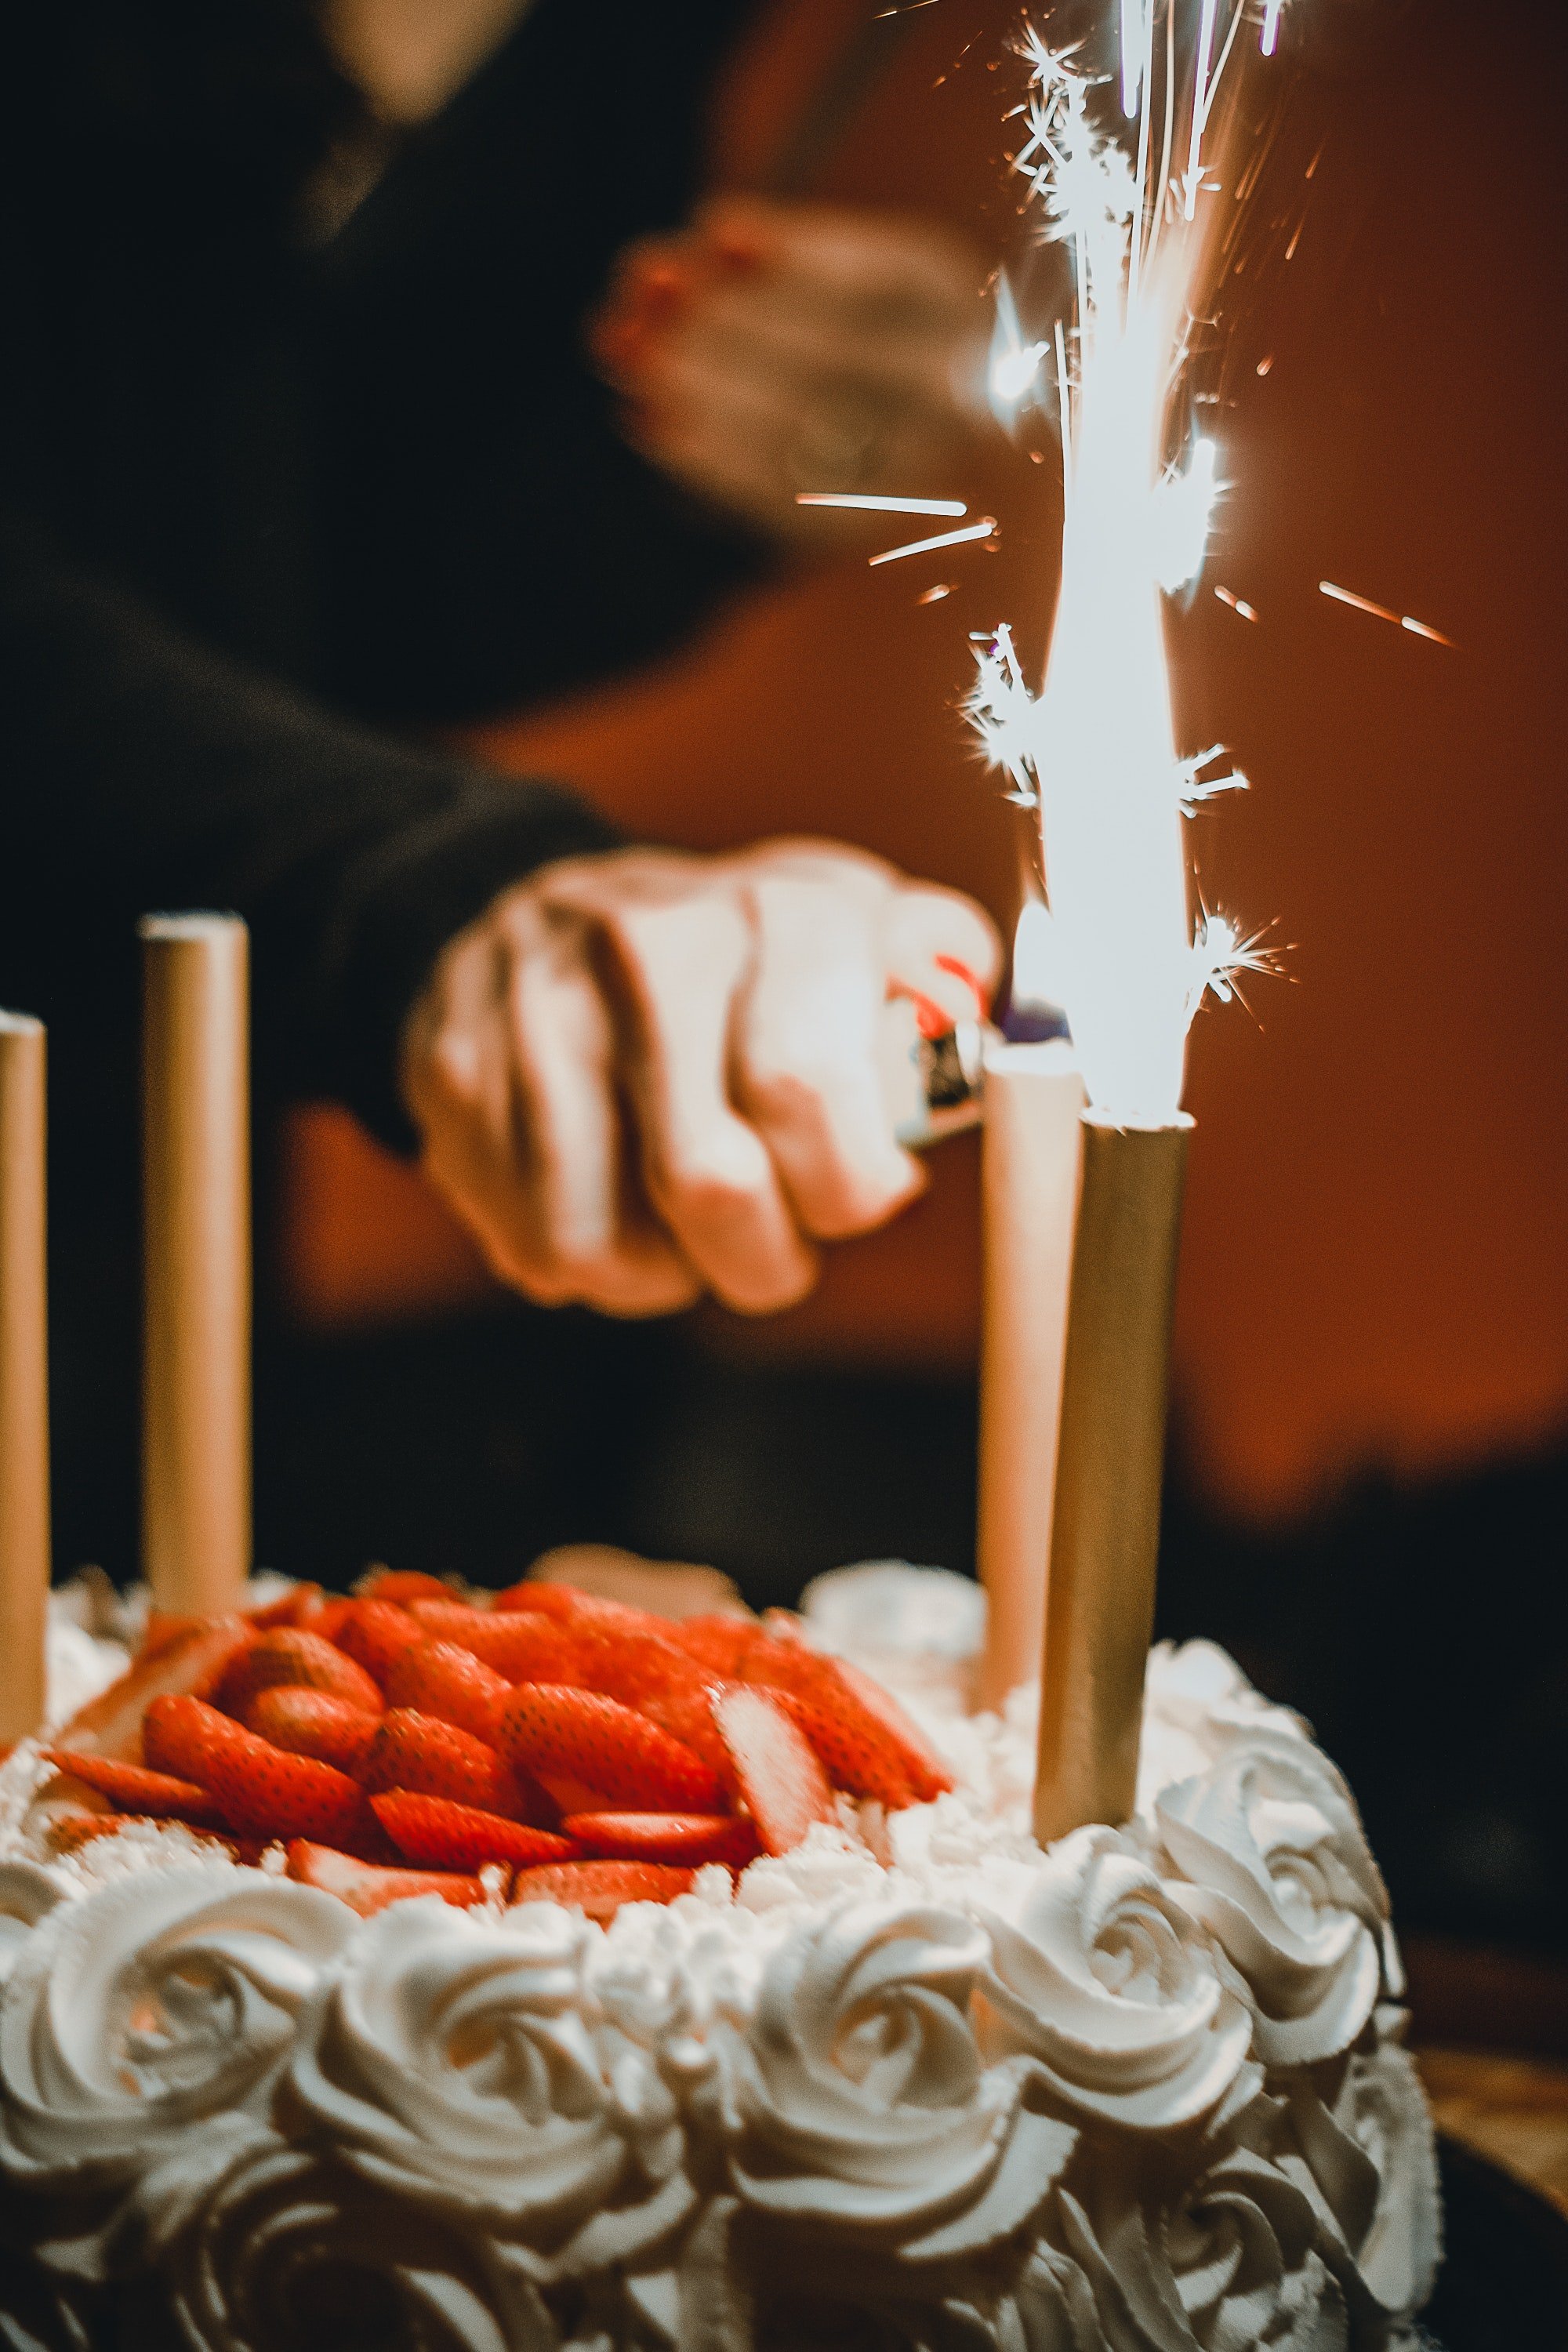 Lucia brachte den Kuchen, und sie sangen am Hof "Alles Gute zum Geburtstag". | Quelle: Pexels